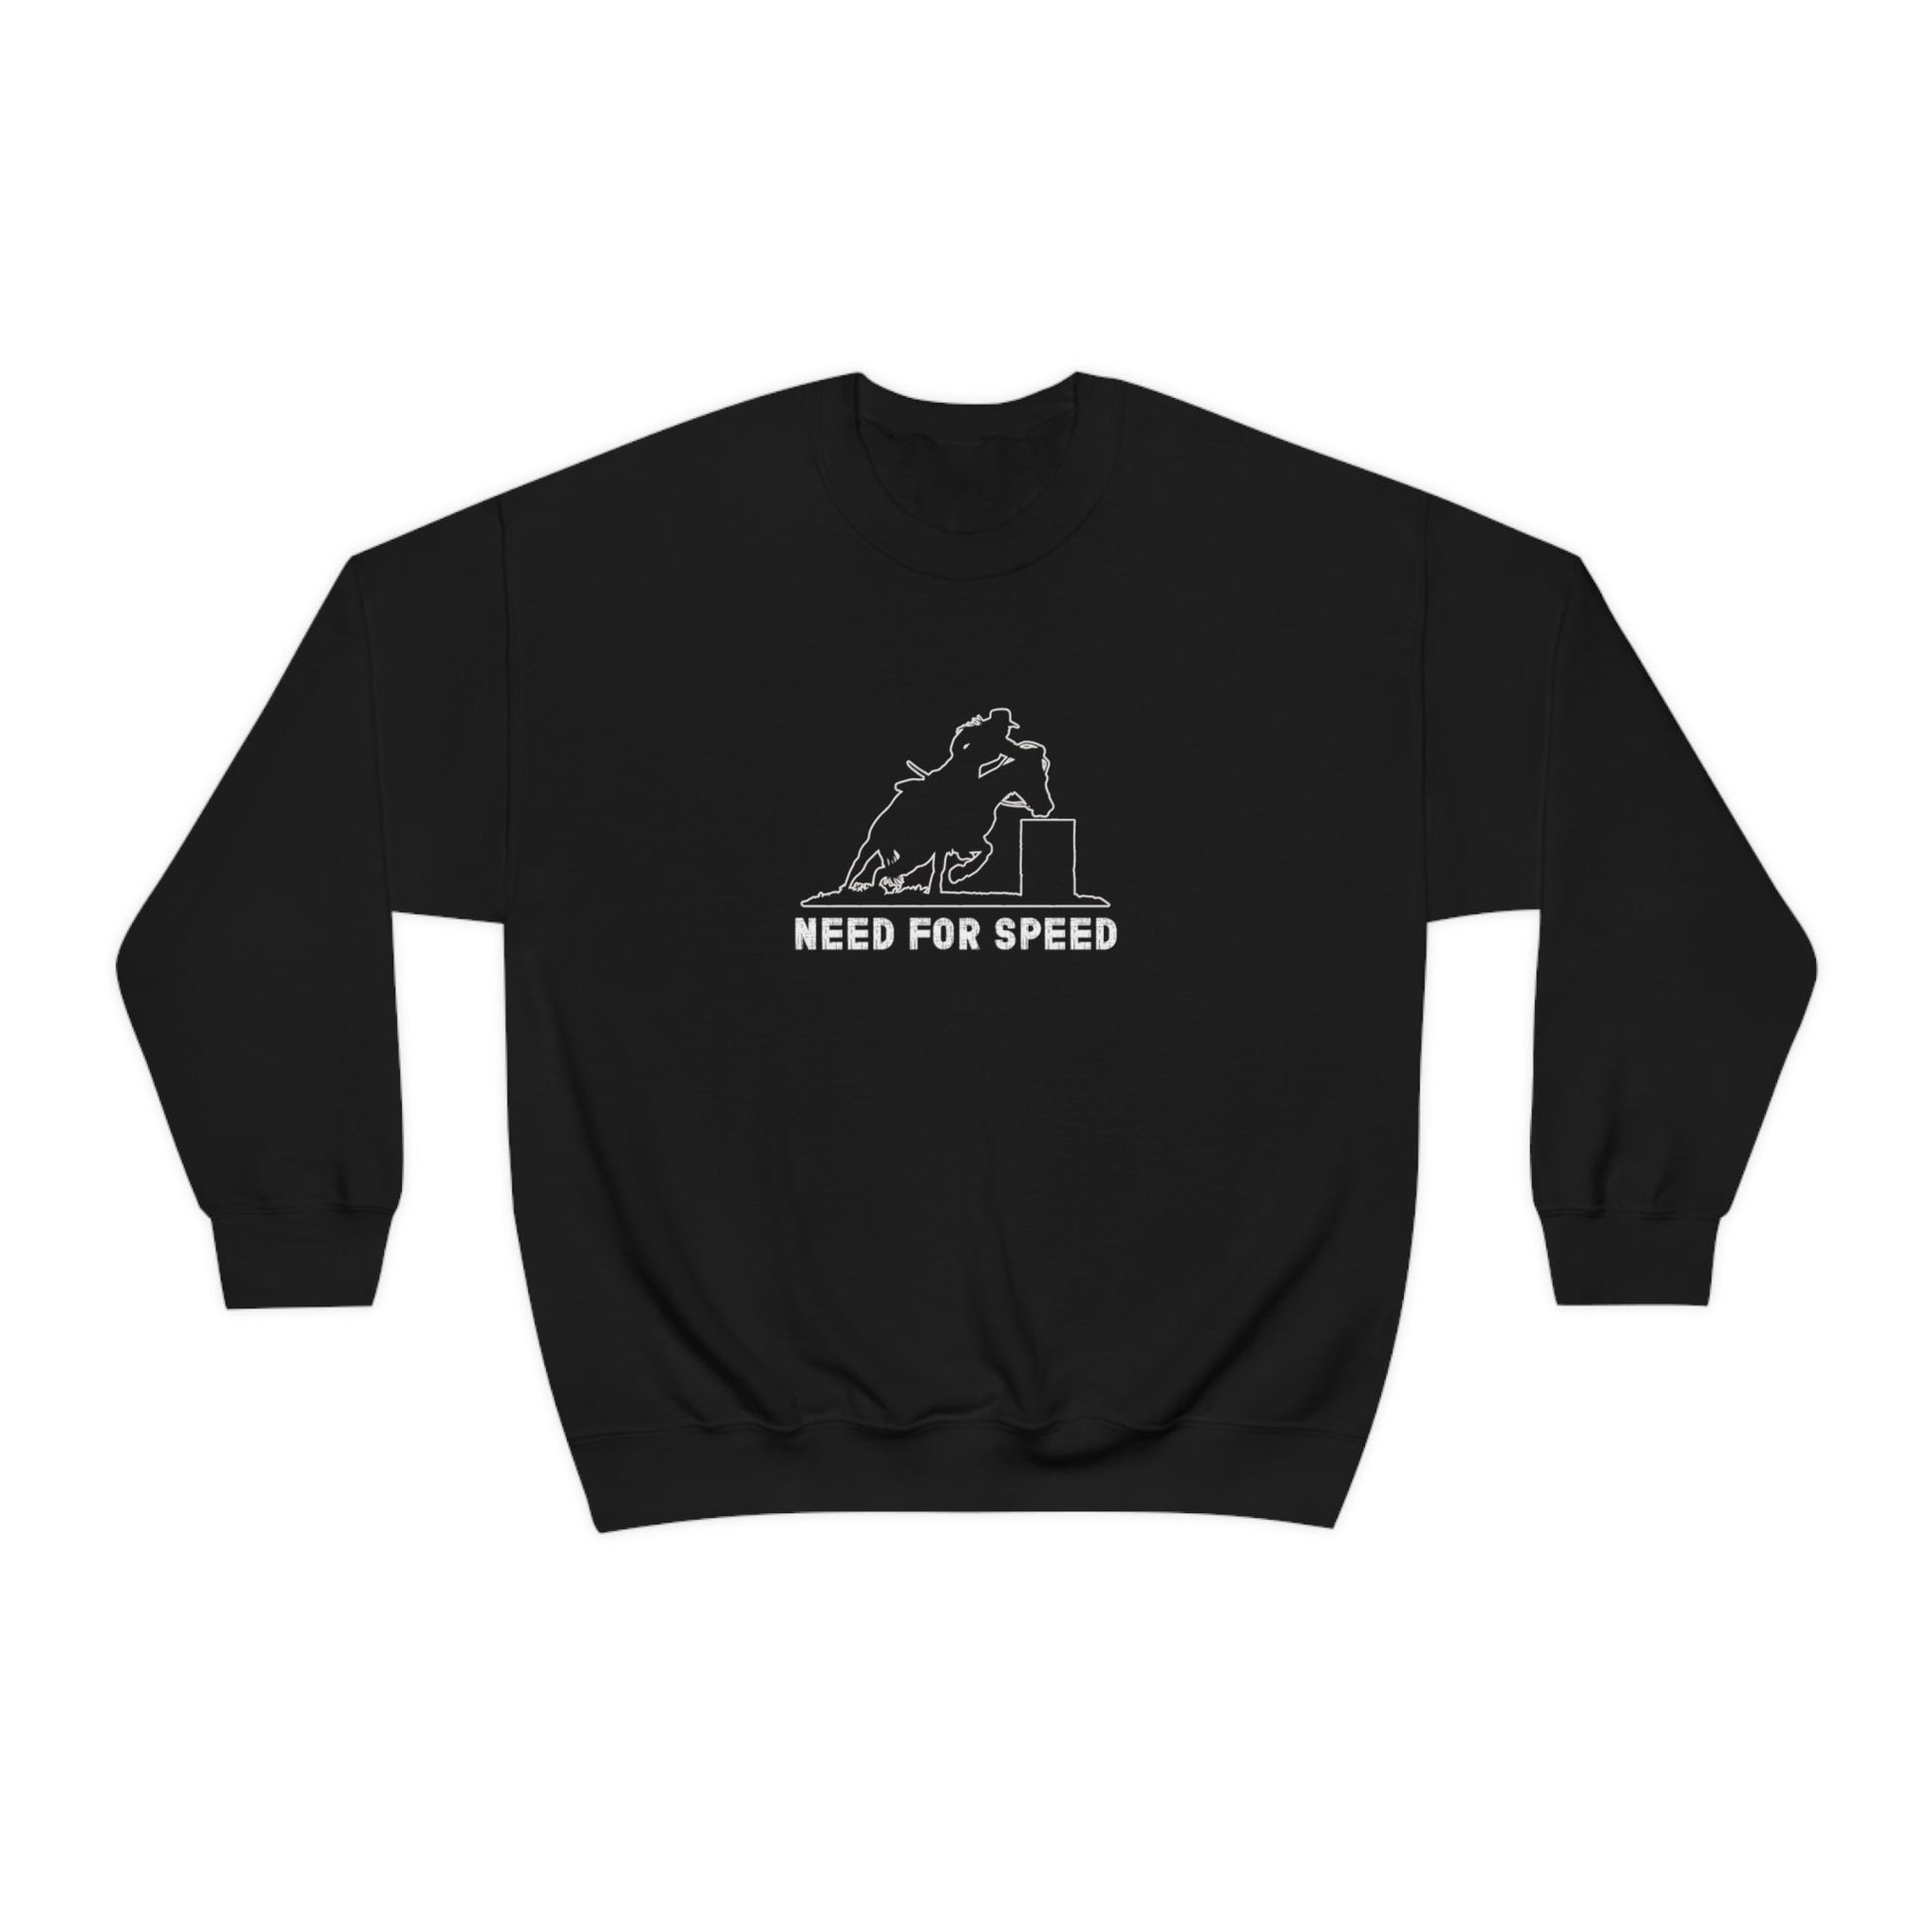 Barrell Racing Sweatshirt, "Need For Speed" t-shirt, USA Rodeo Sweatshirt,Barrel Racing Rodeo - FlooredByArt